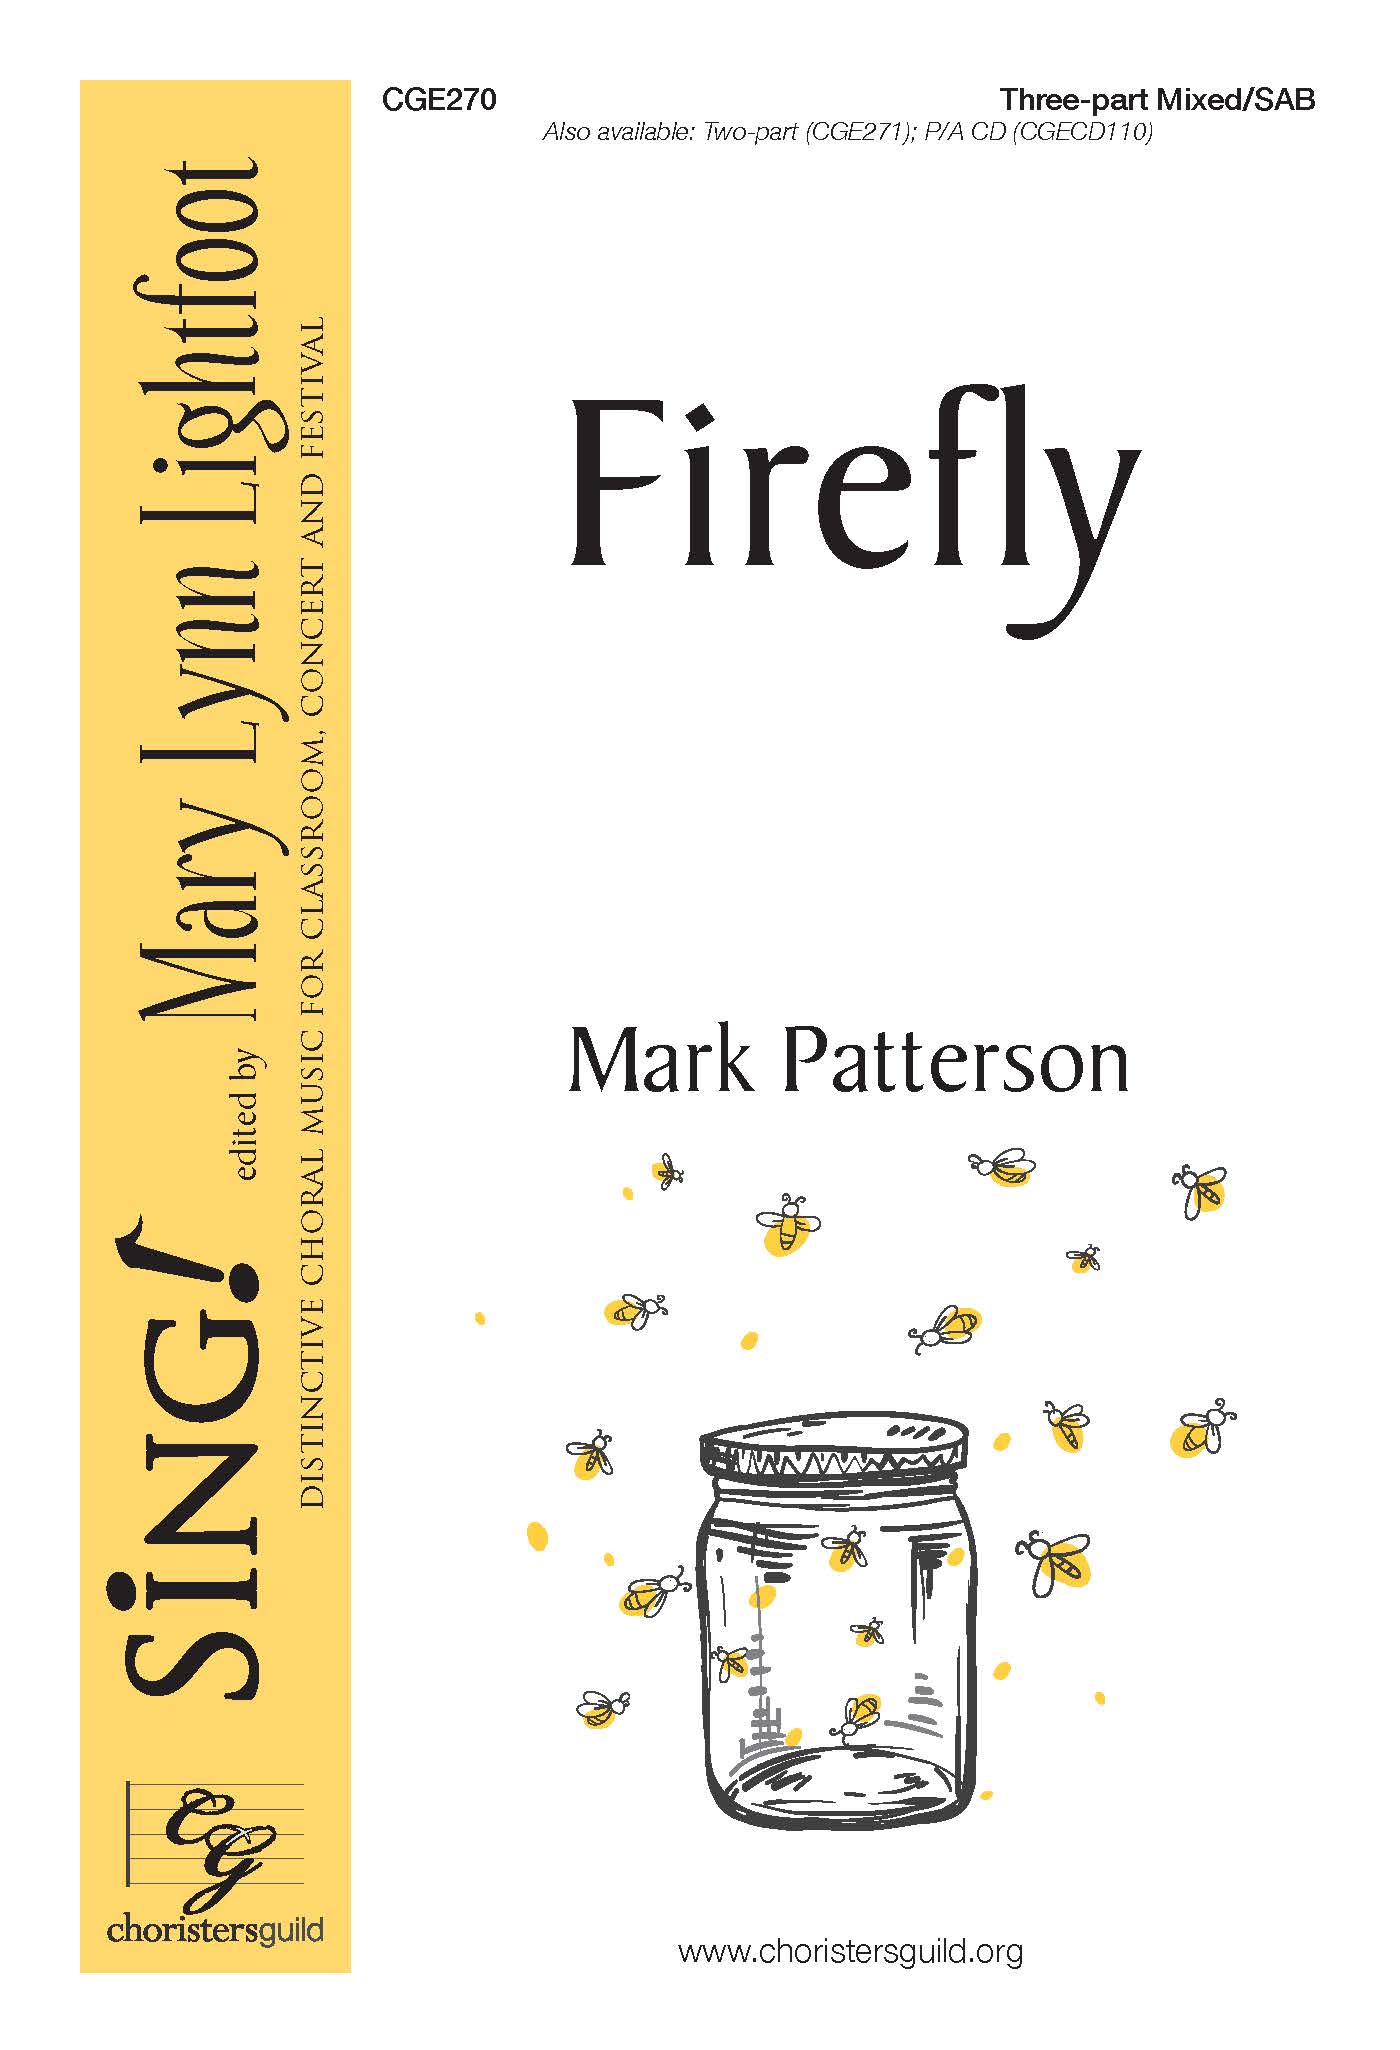 Firefly Three-part mixed SAB